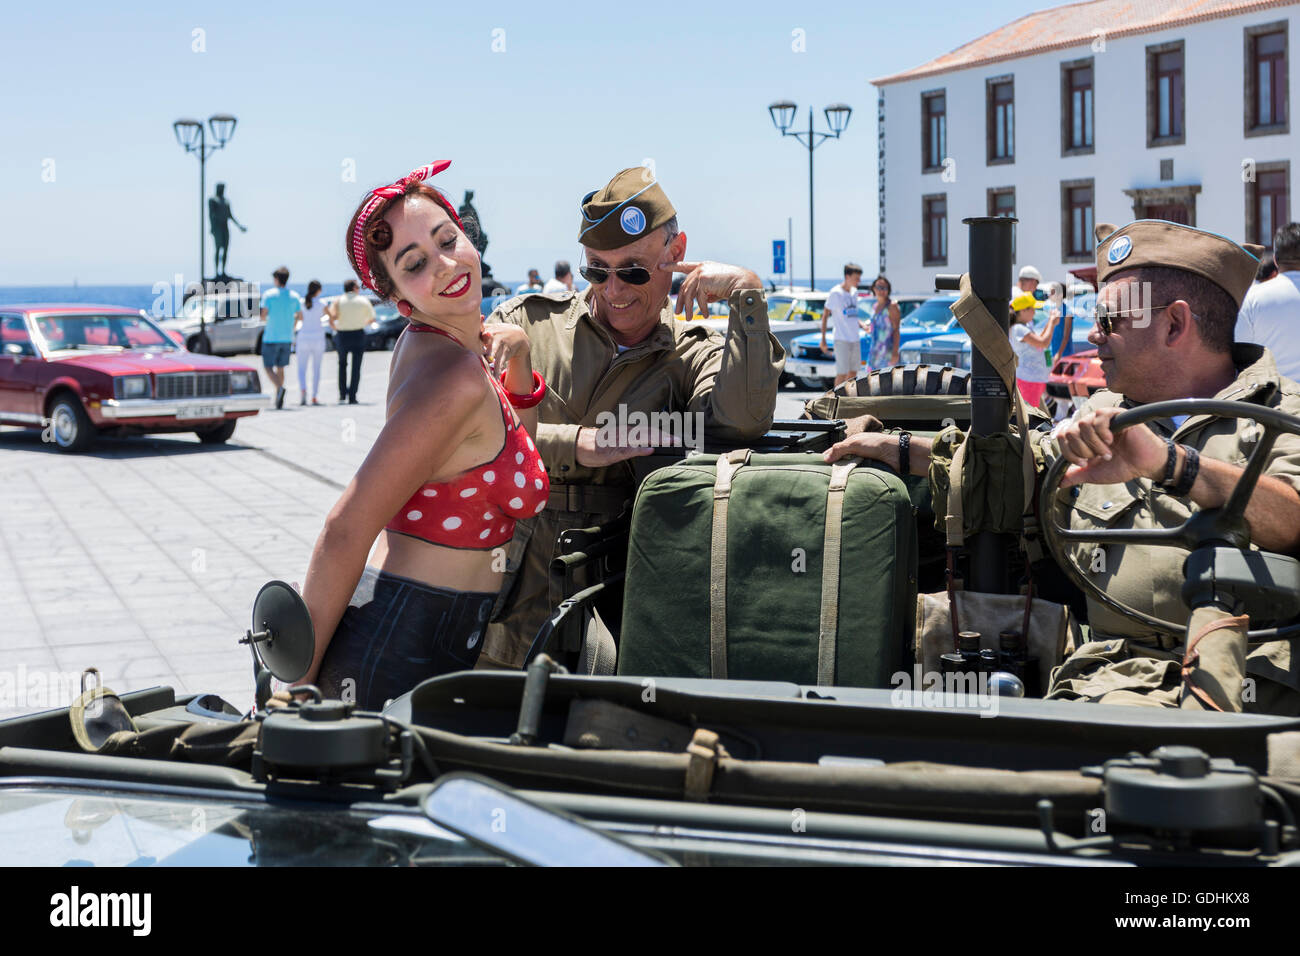 Pin up girl peint corps photographié avec des joueurs en nous l'équipement militaire à l'American voitures et motos rassemblement dans la Plaza de la basilique de candelaria, Tenerife. Rejoint par les fans de voitures et de vélos et des filles habillés en 50s pin ups. Banque D'Images